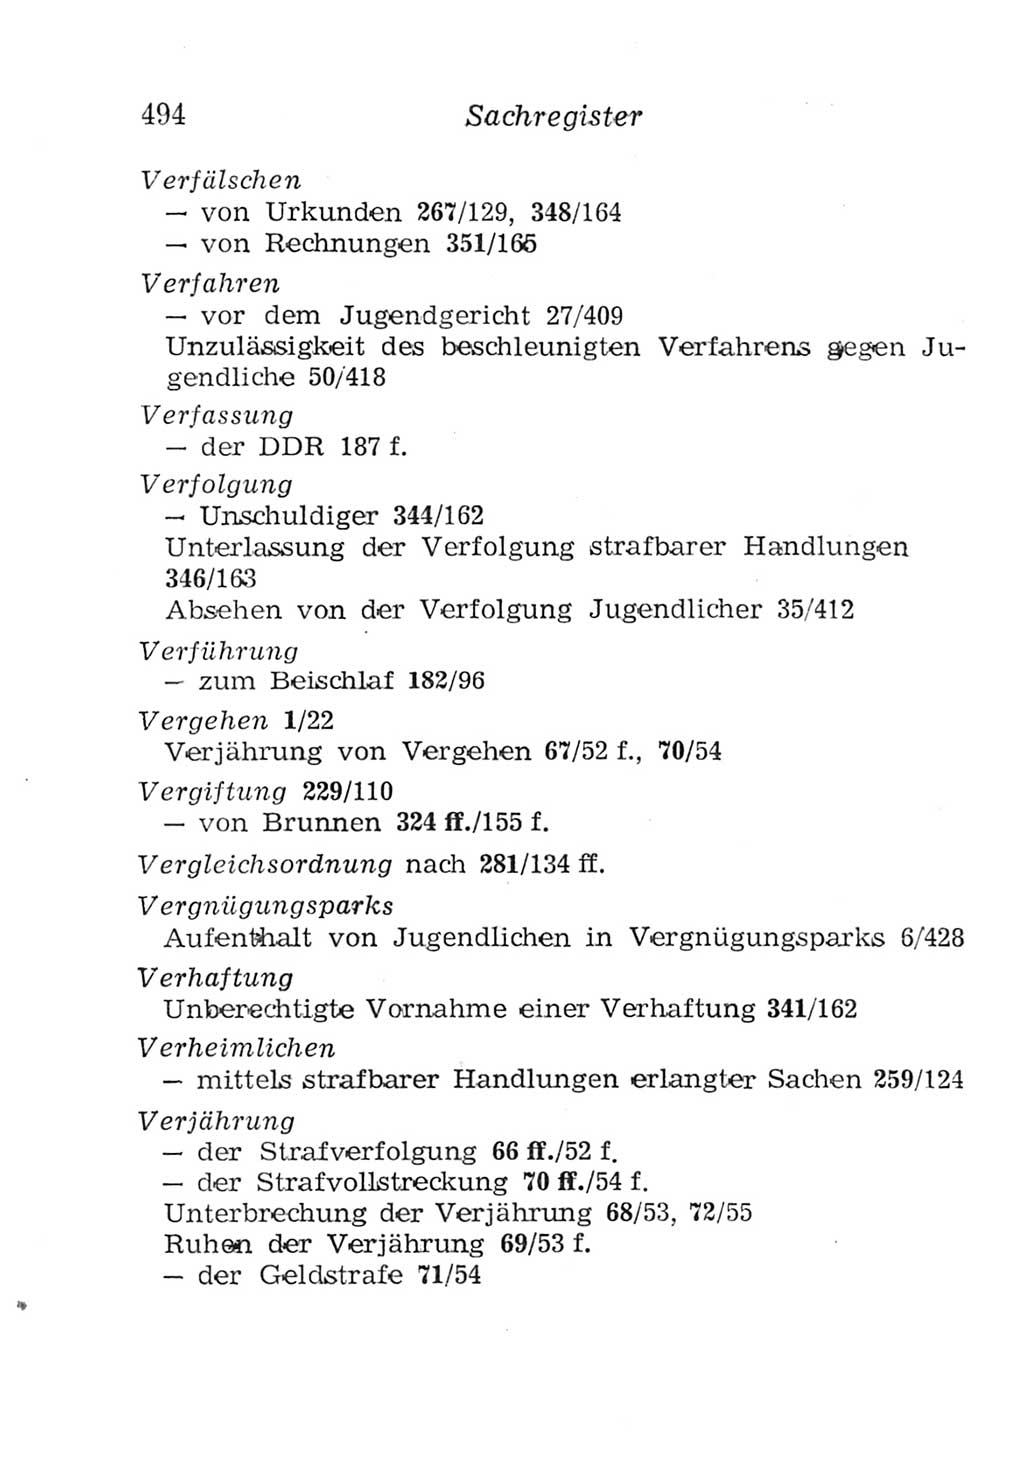 Strafgesetzbuch (StGB) und andere Strafgesetze [Deutsche Demokratische Republik (DDR)] 1957, Seite 494 (StGB Strafges. DDR 1957, S. 494)